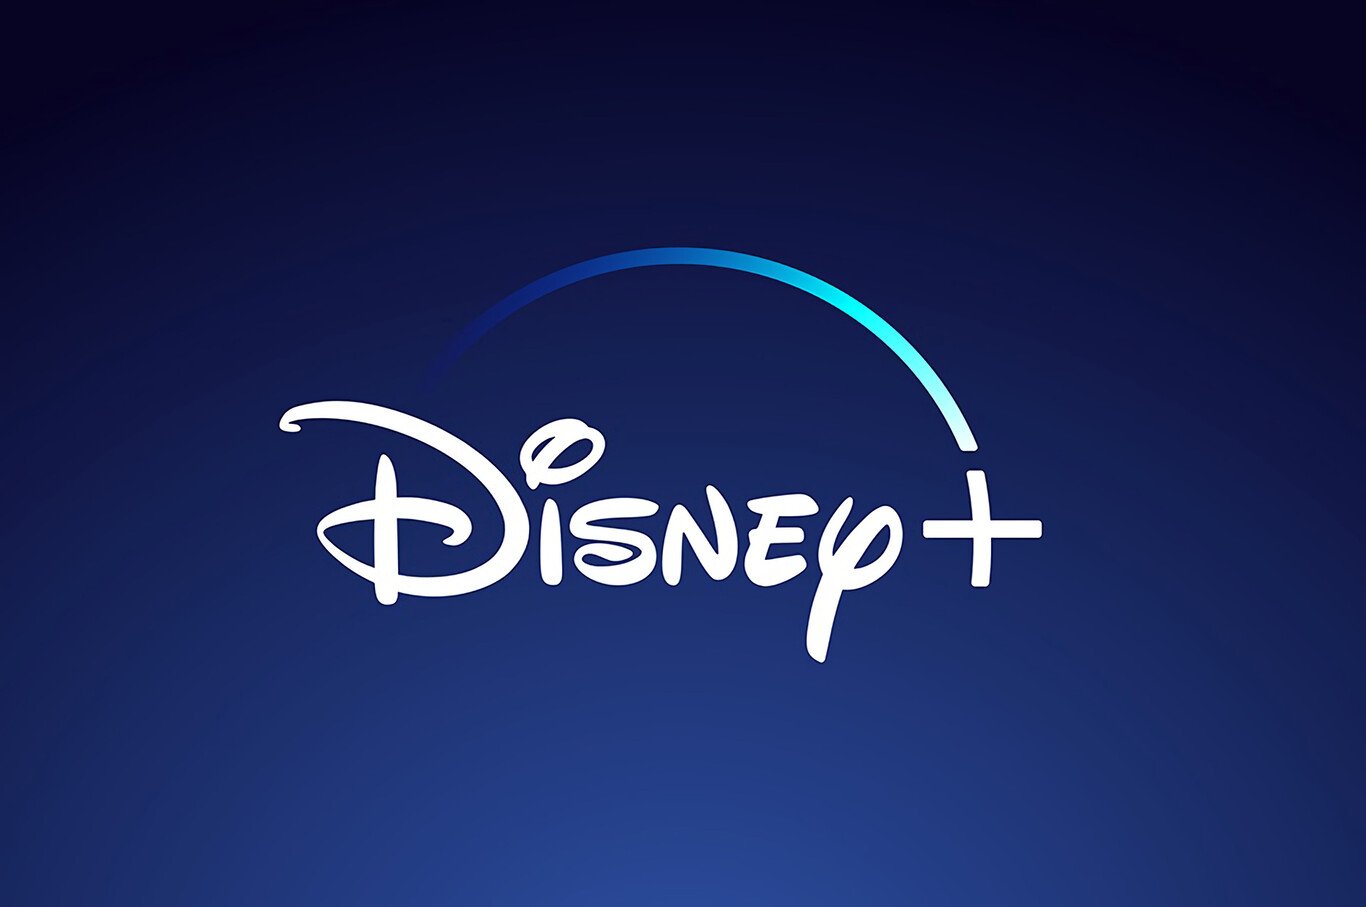 Disney+ apuja tarifes als EUA i només et manté la quota si acceptes veure anuncis